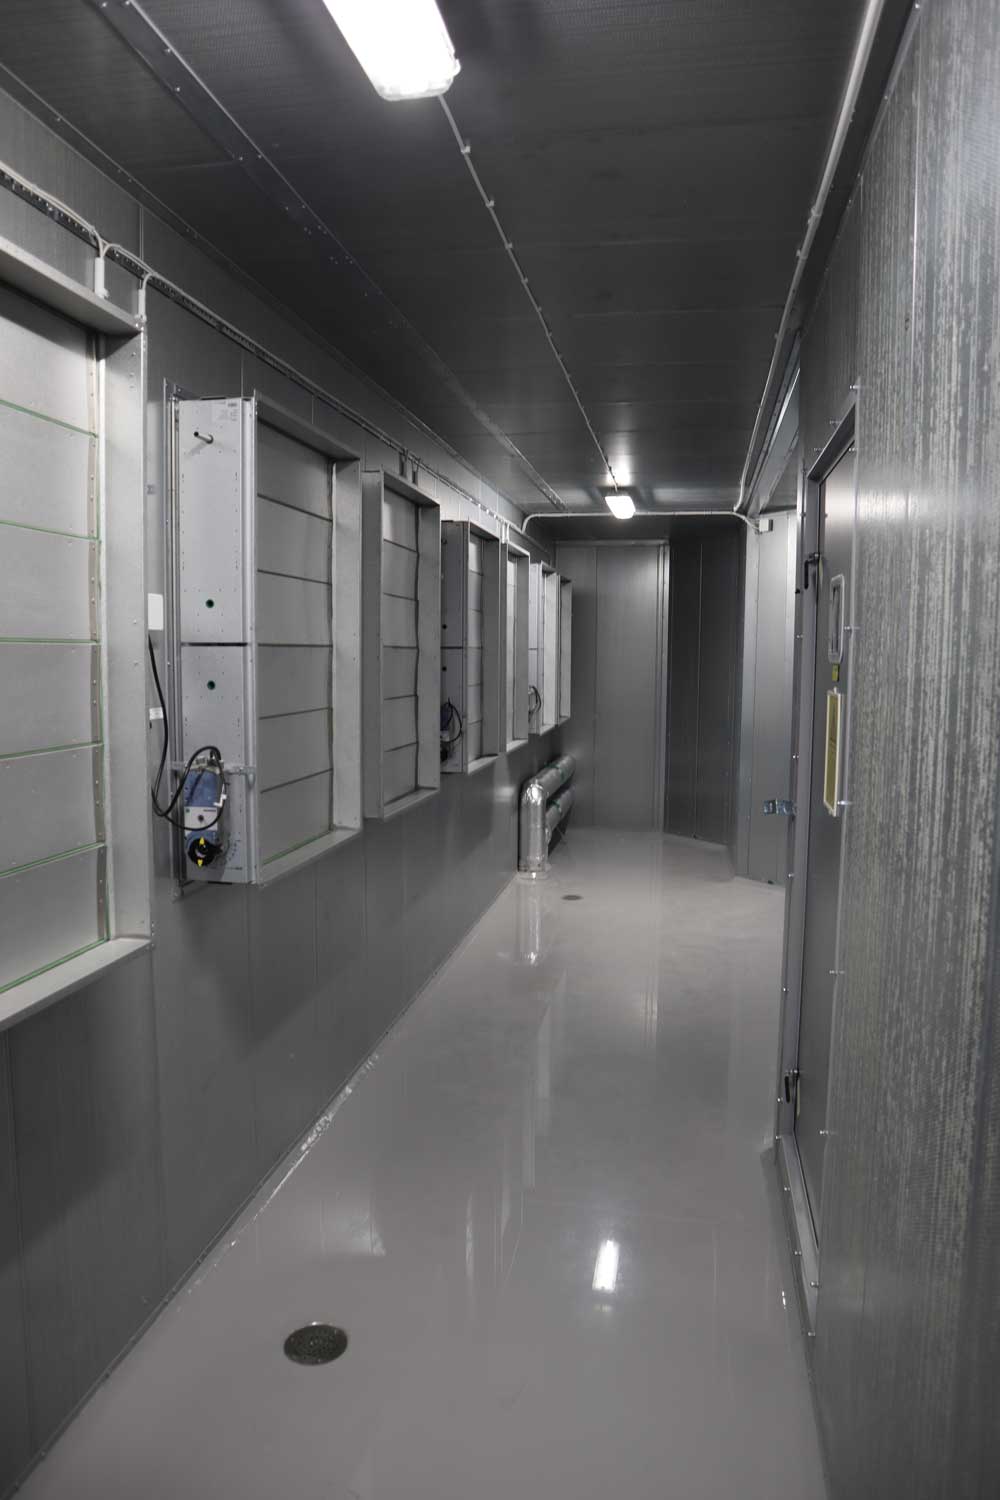 Ett fläktrum i en korridor, gråa väggar och golv.